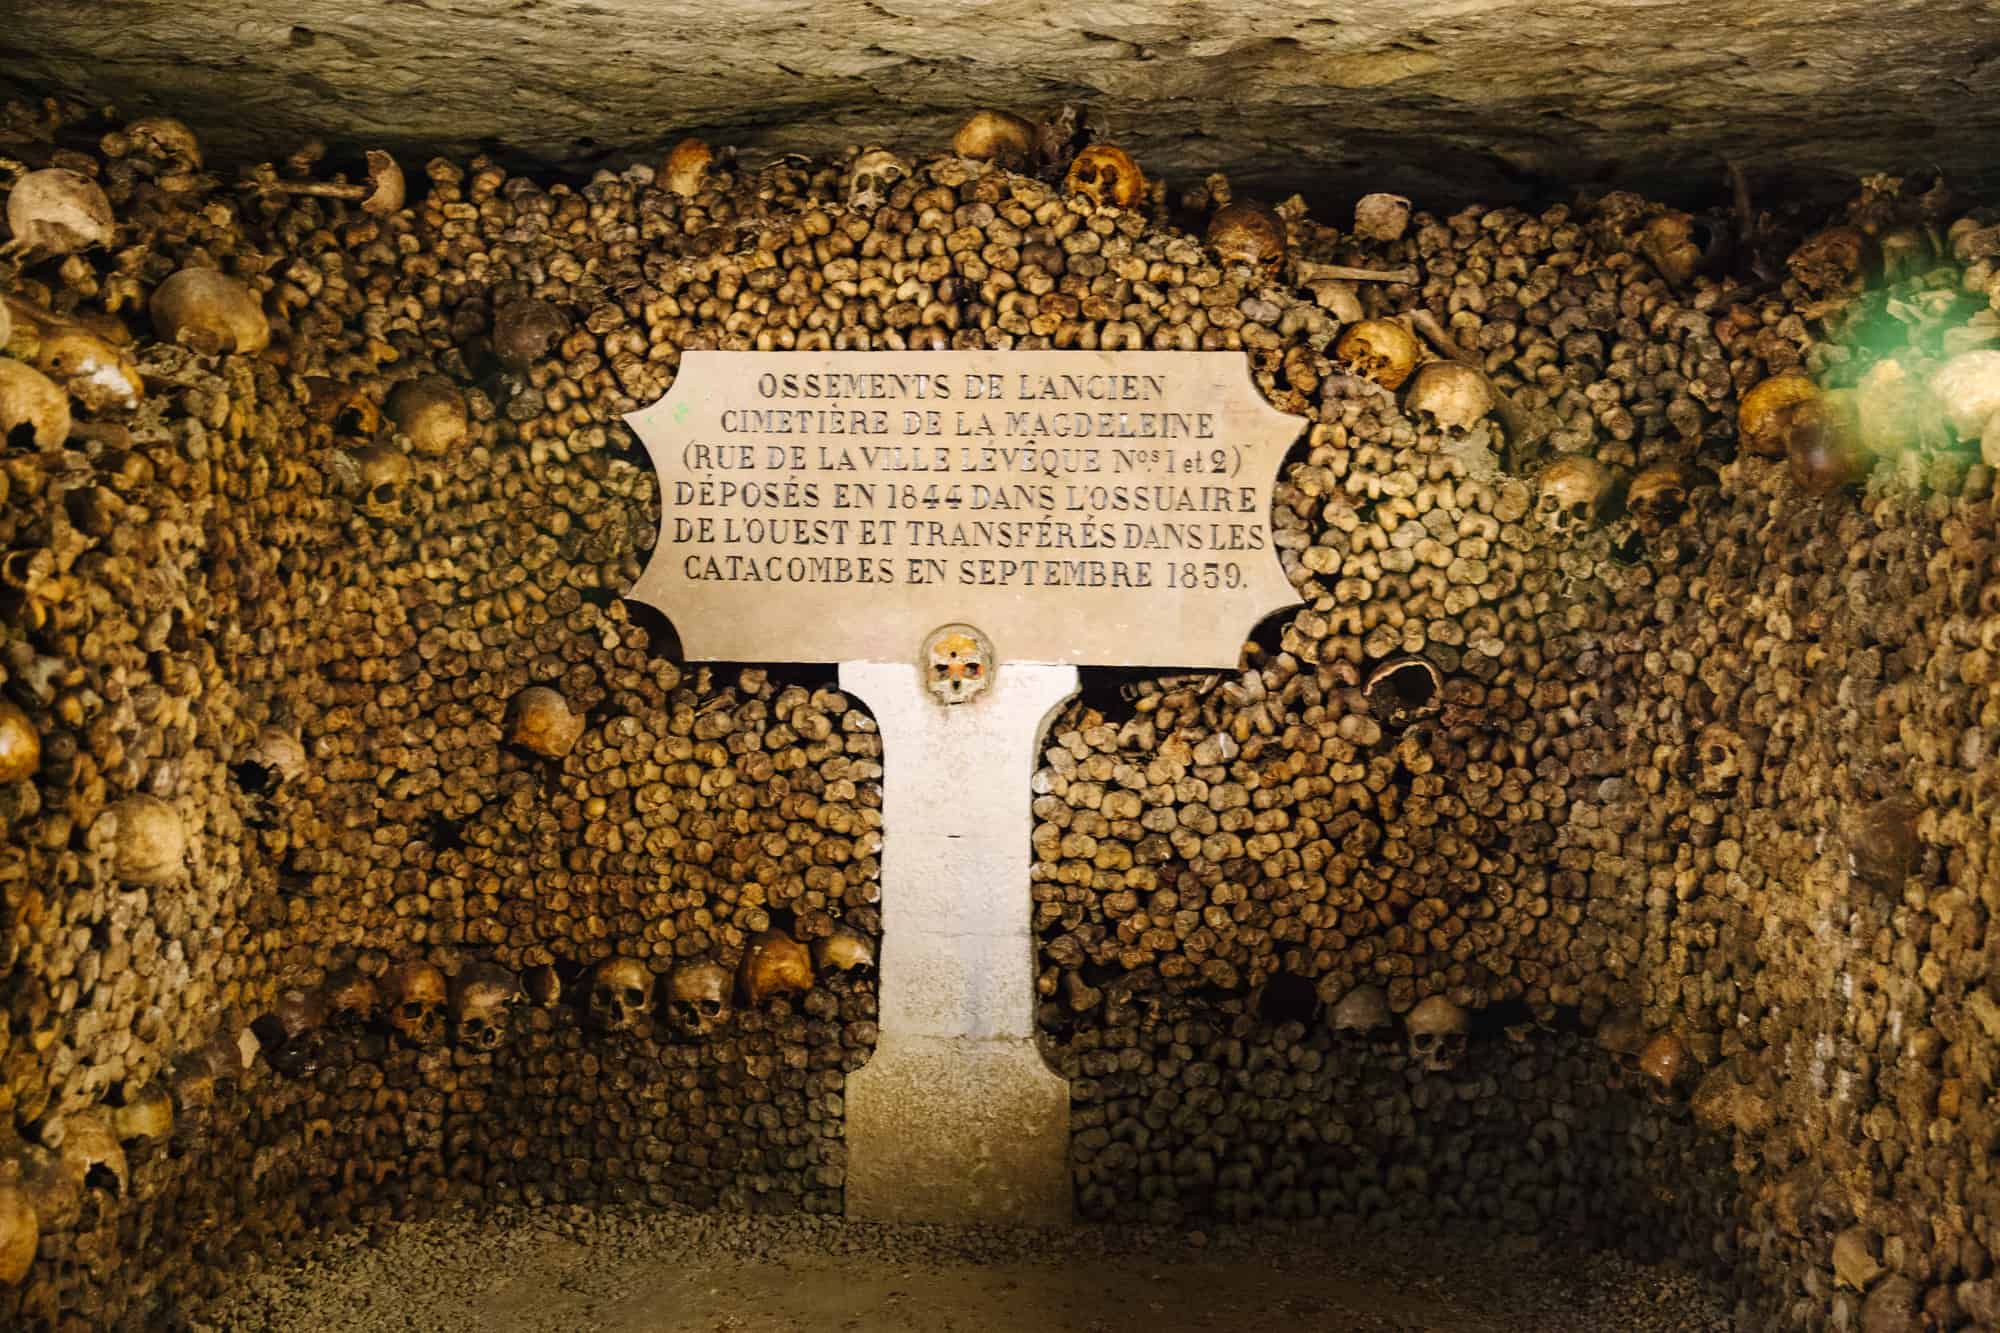 Paris, Catacombs Tour, Highlights, Paris-Catacombs-Tour-Catacombs-Fascinating-History.